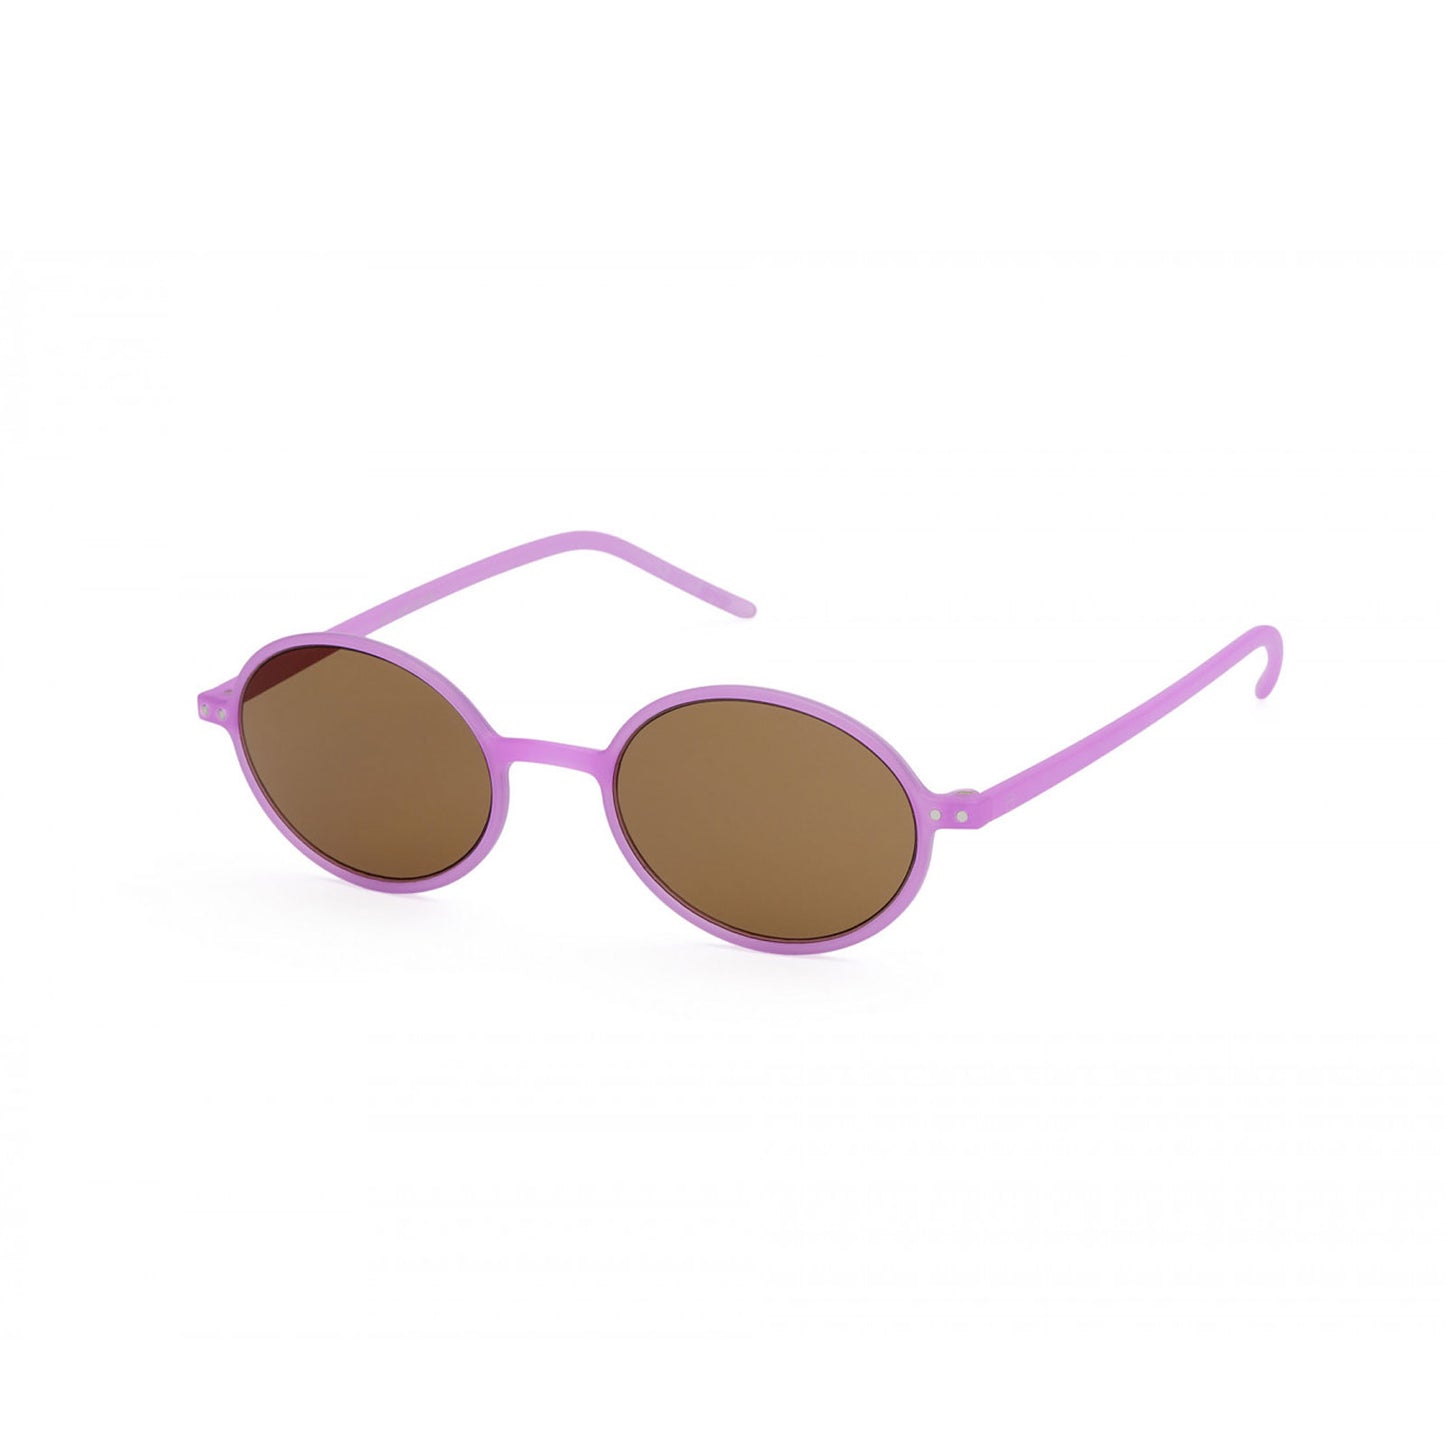 IZIPIZI Slim Sunglasses, Mallow